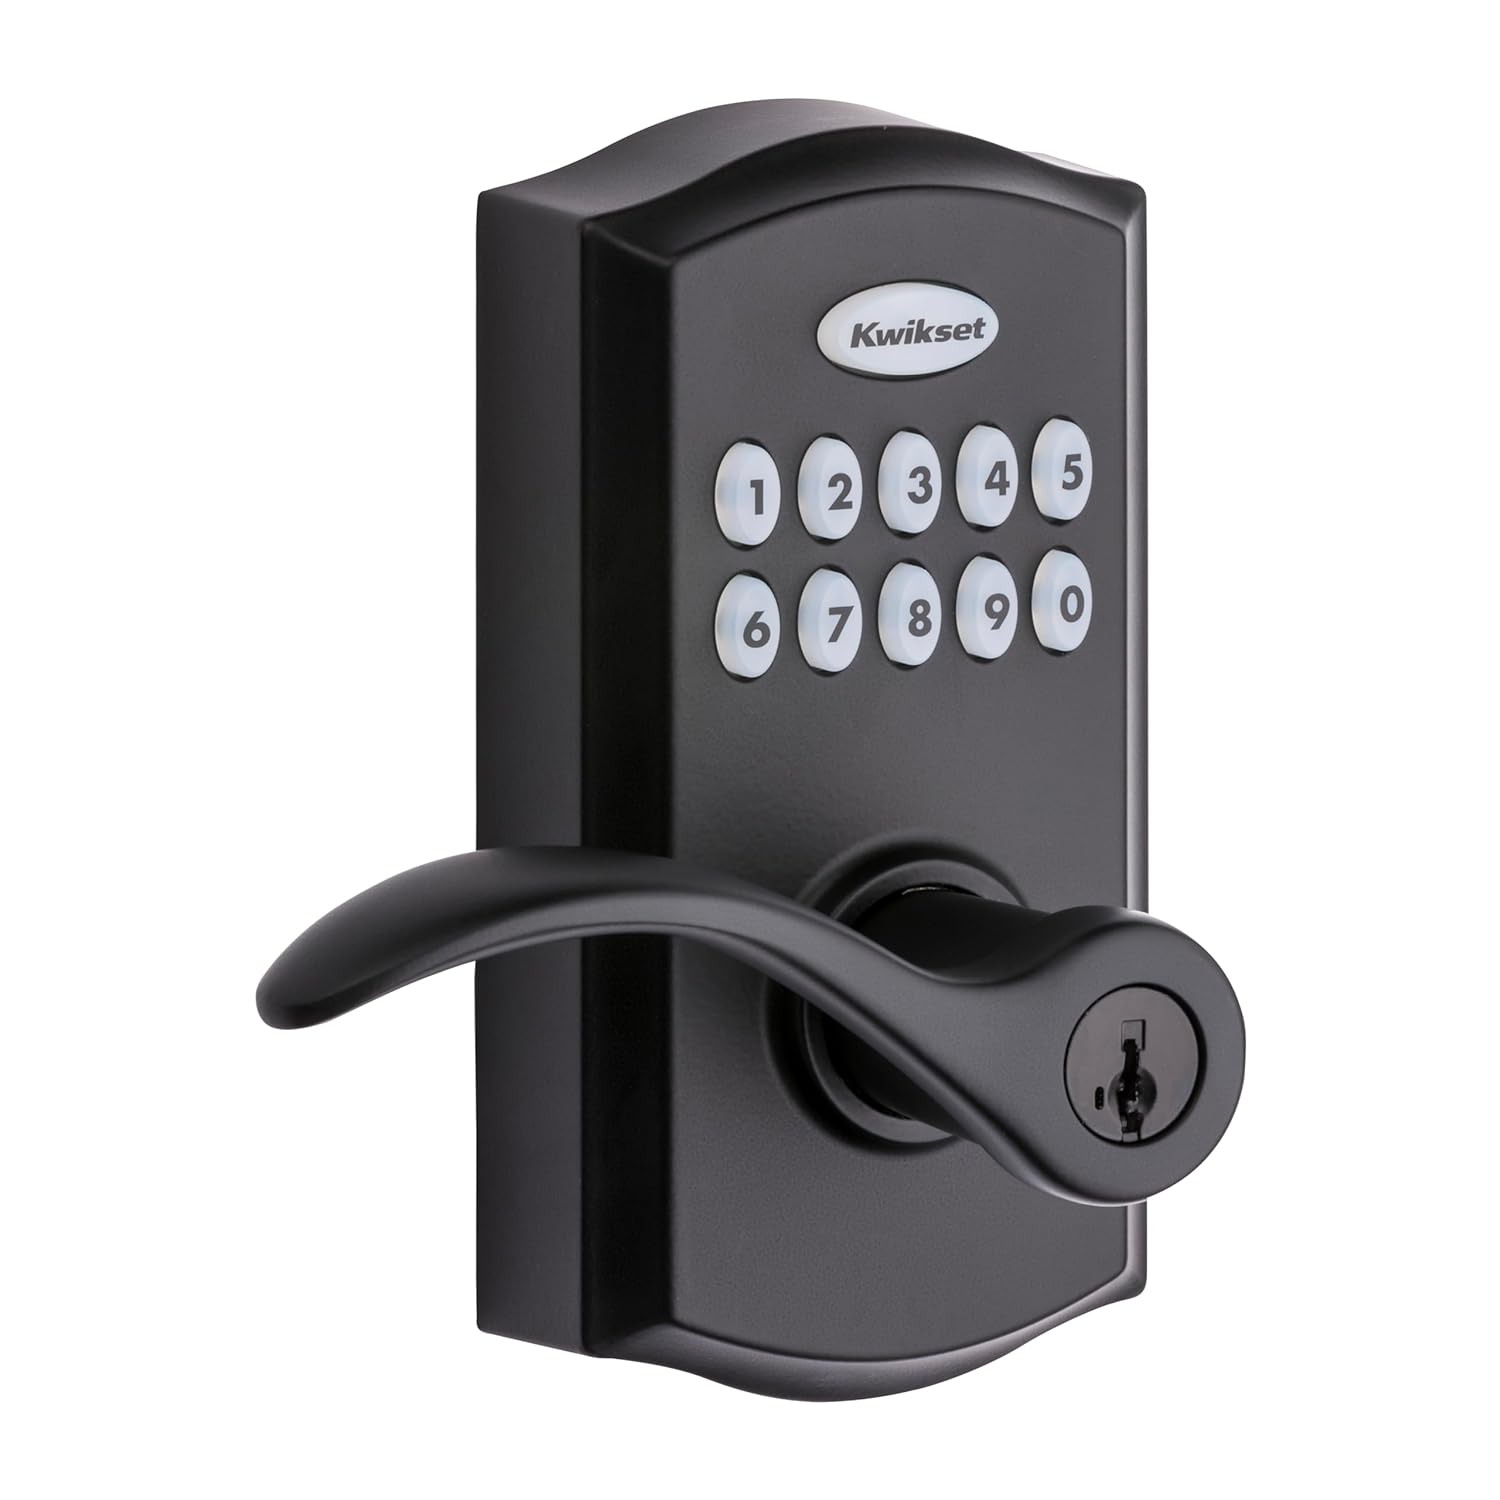 Kwikset SmartCode 955 Keypad Electronic Lever Door Lock Deadbolt Alternative with Pembroke Door Handle Lever Featuring SmartKey Security in Iron Black